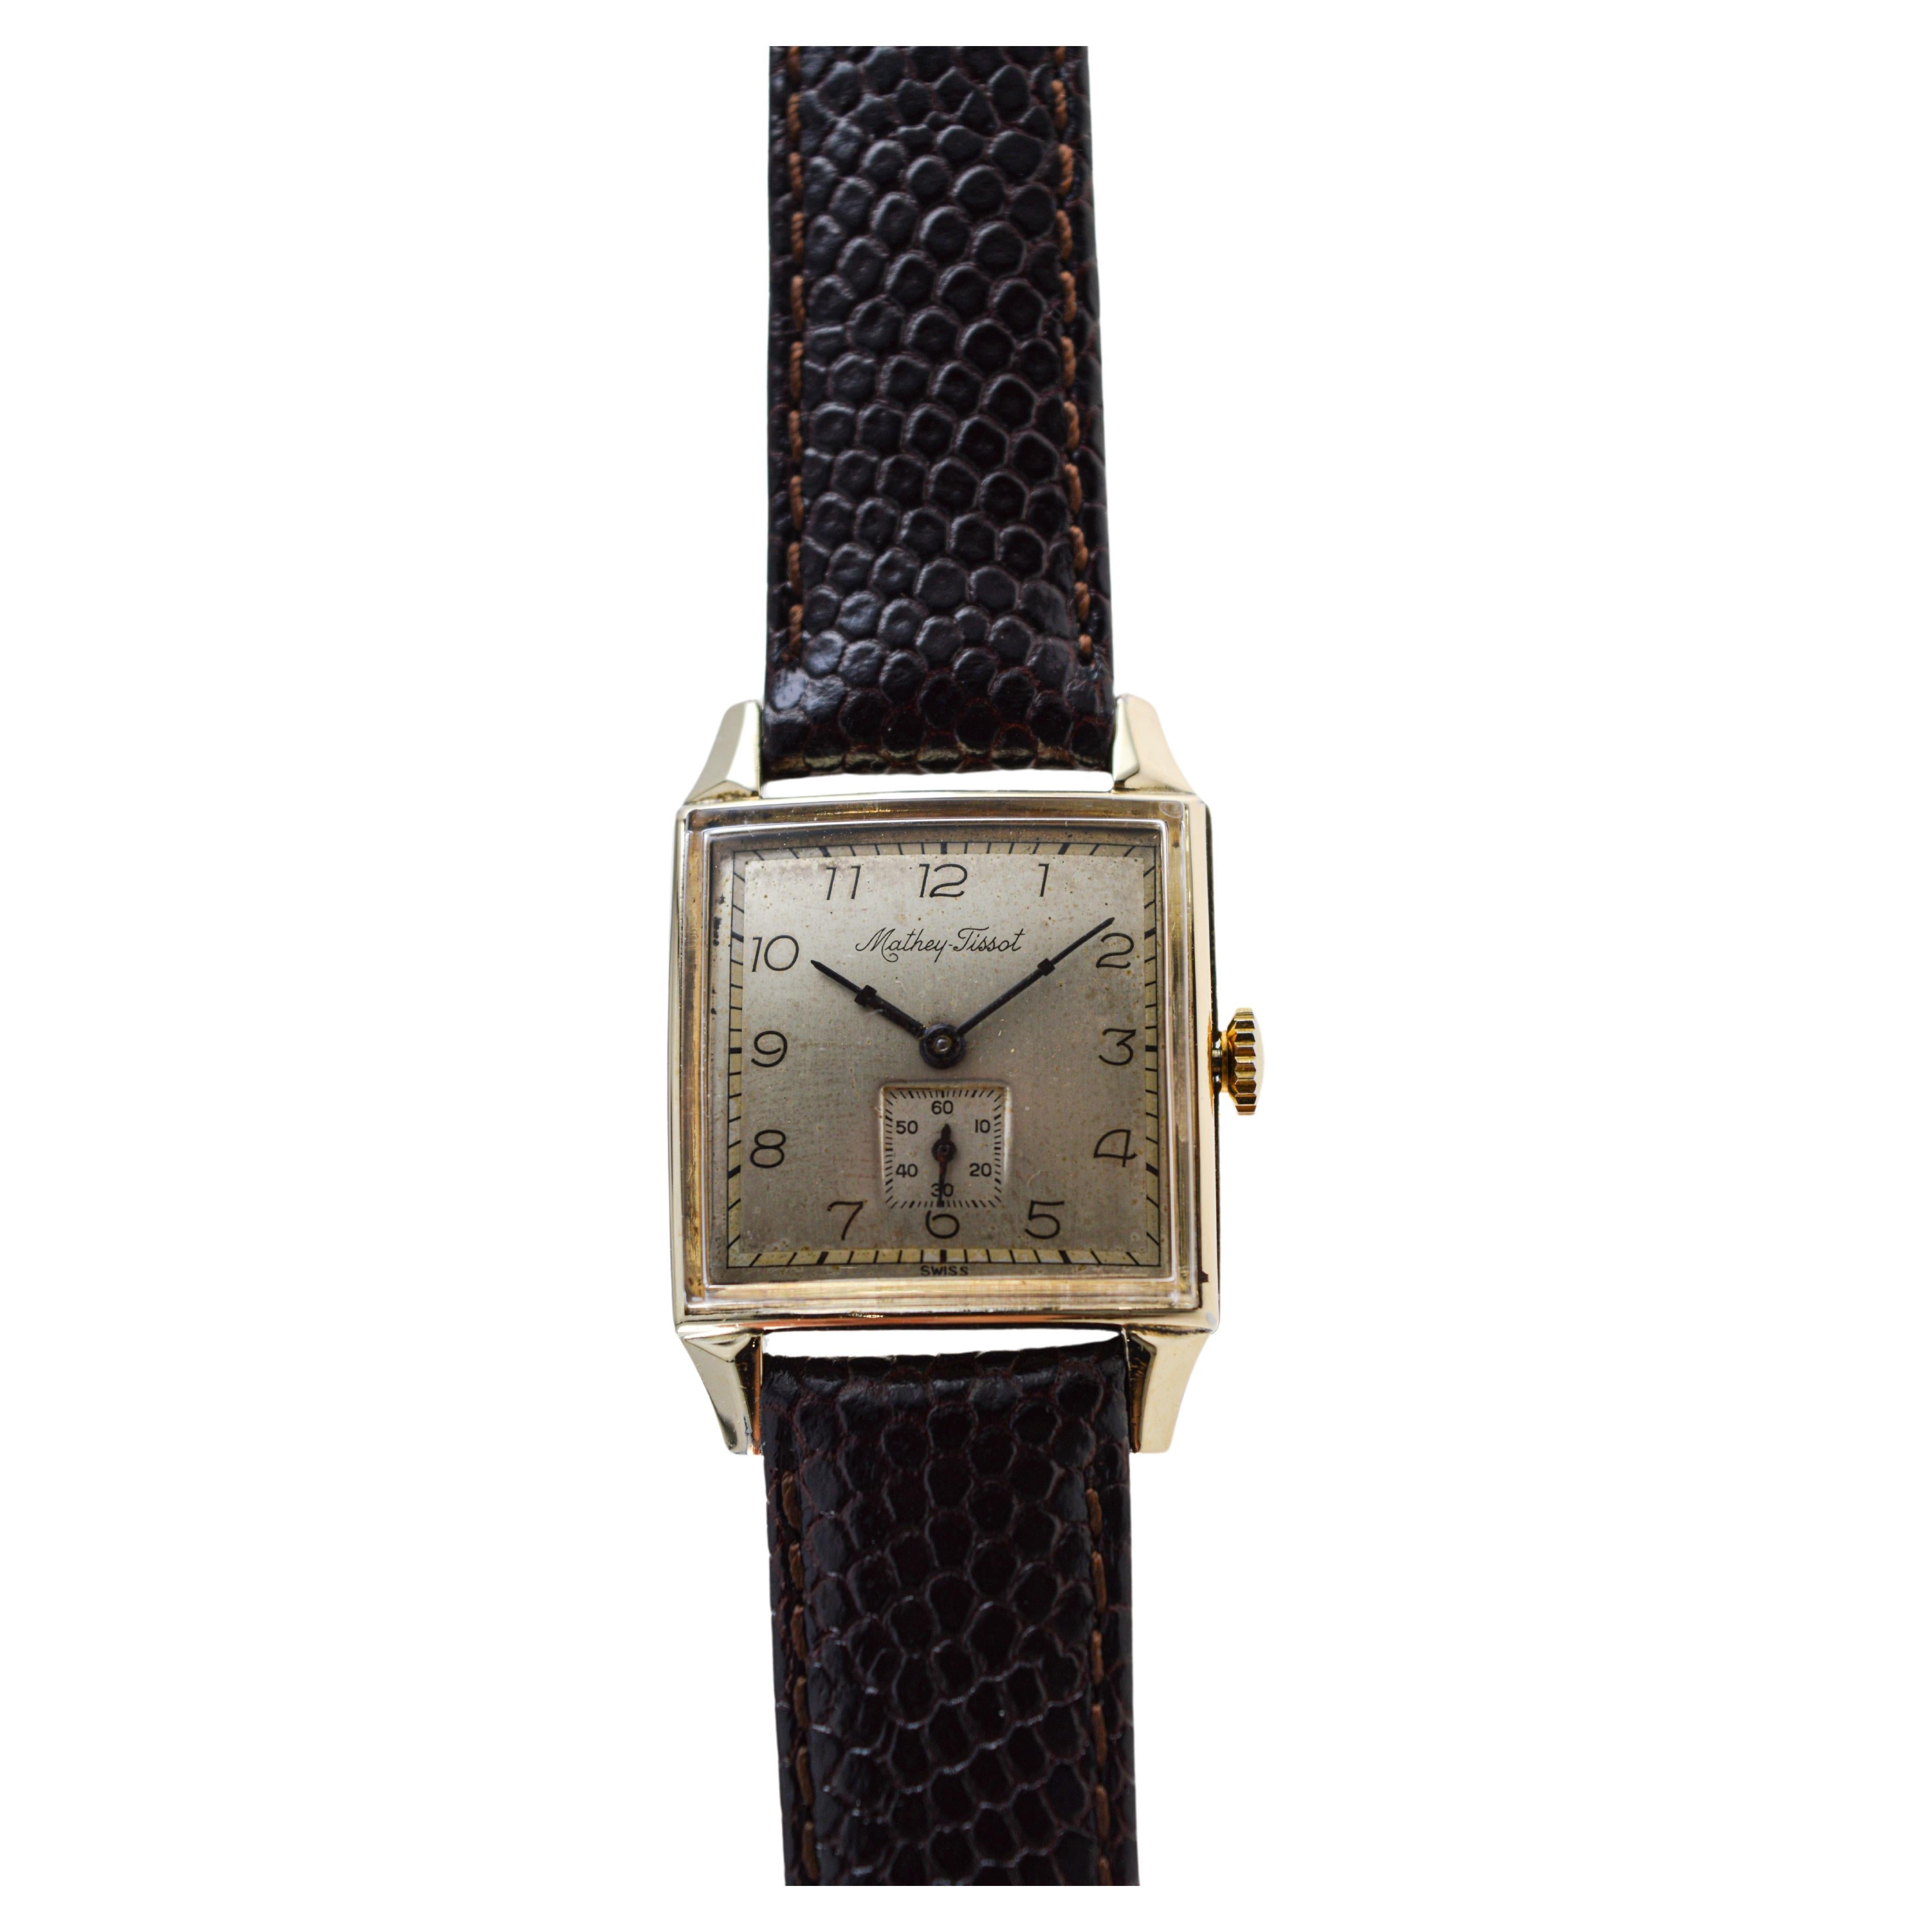 rectangular tissot watch